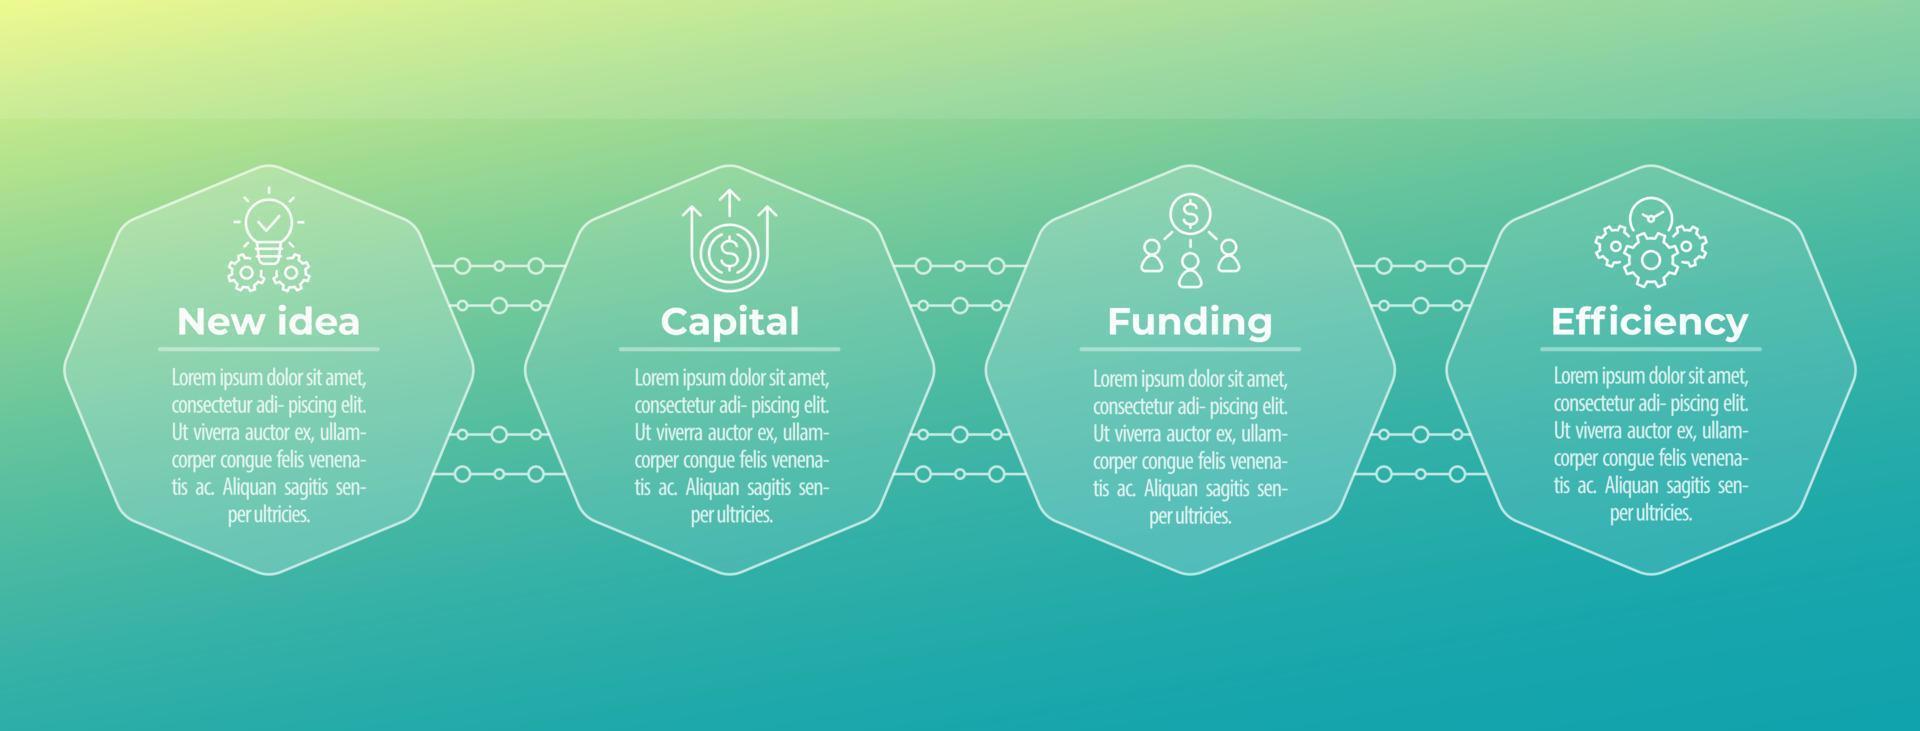 affaires, infographie financière avec des icônes sur des formes octogonales vecteur